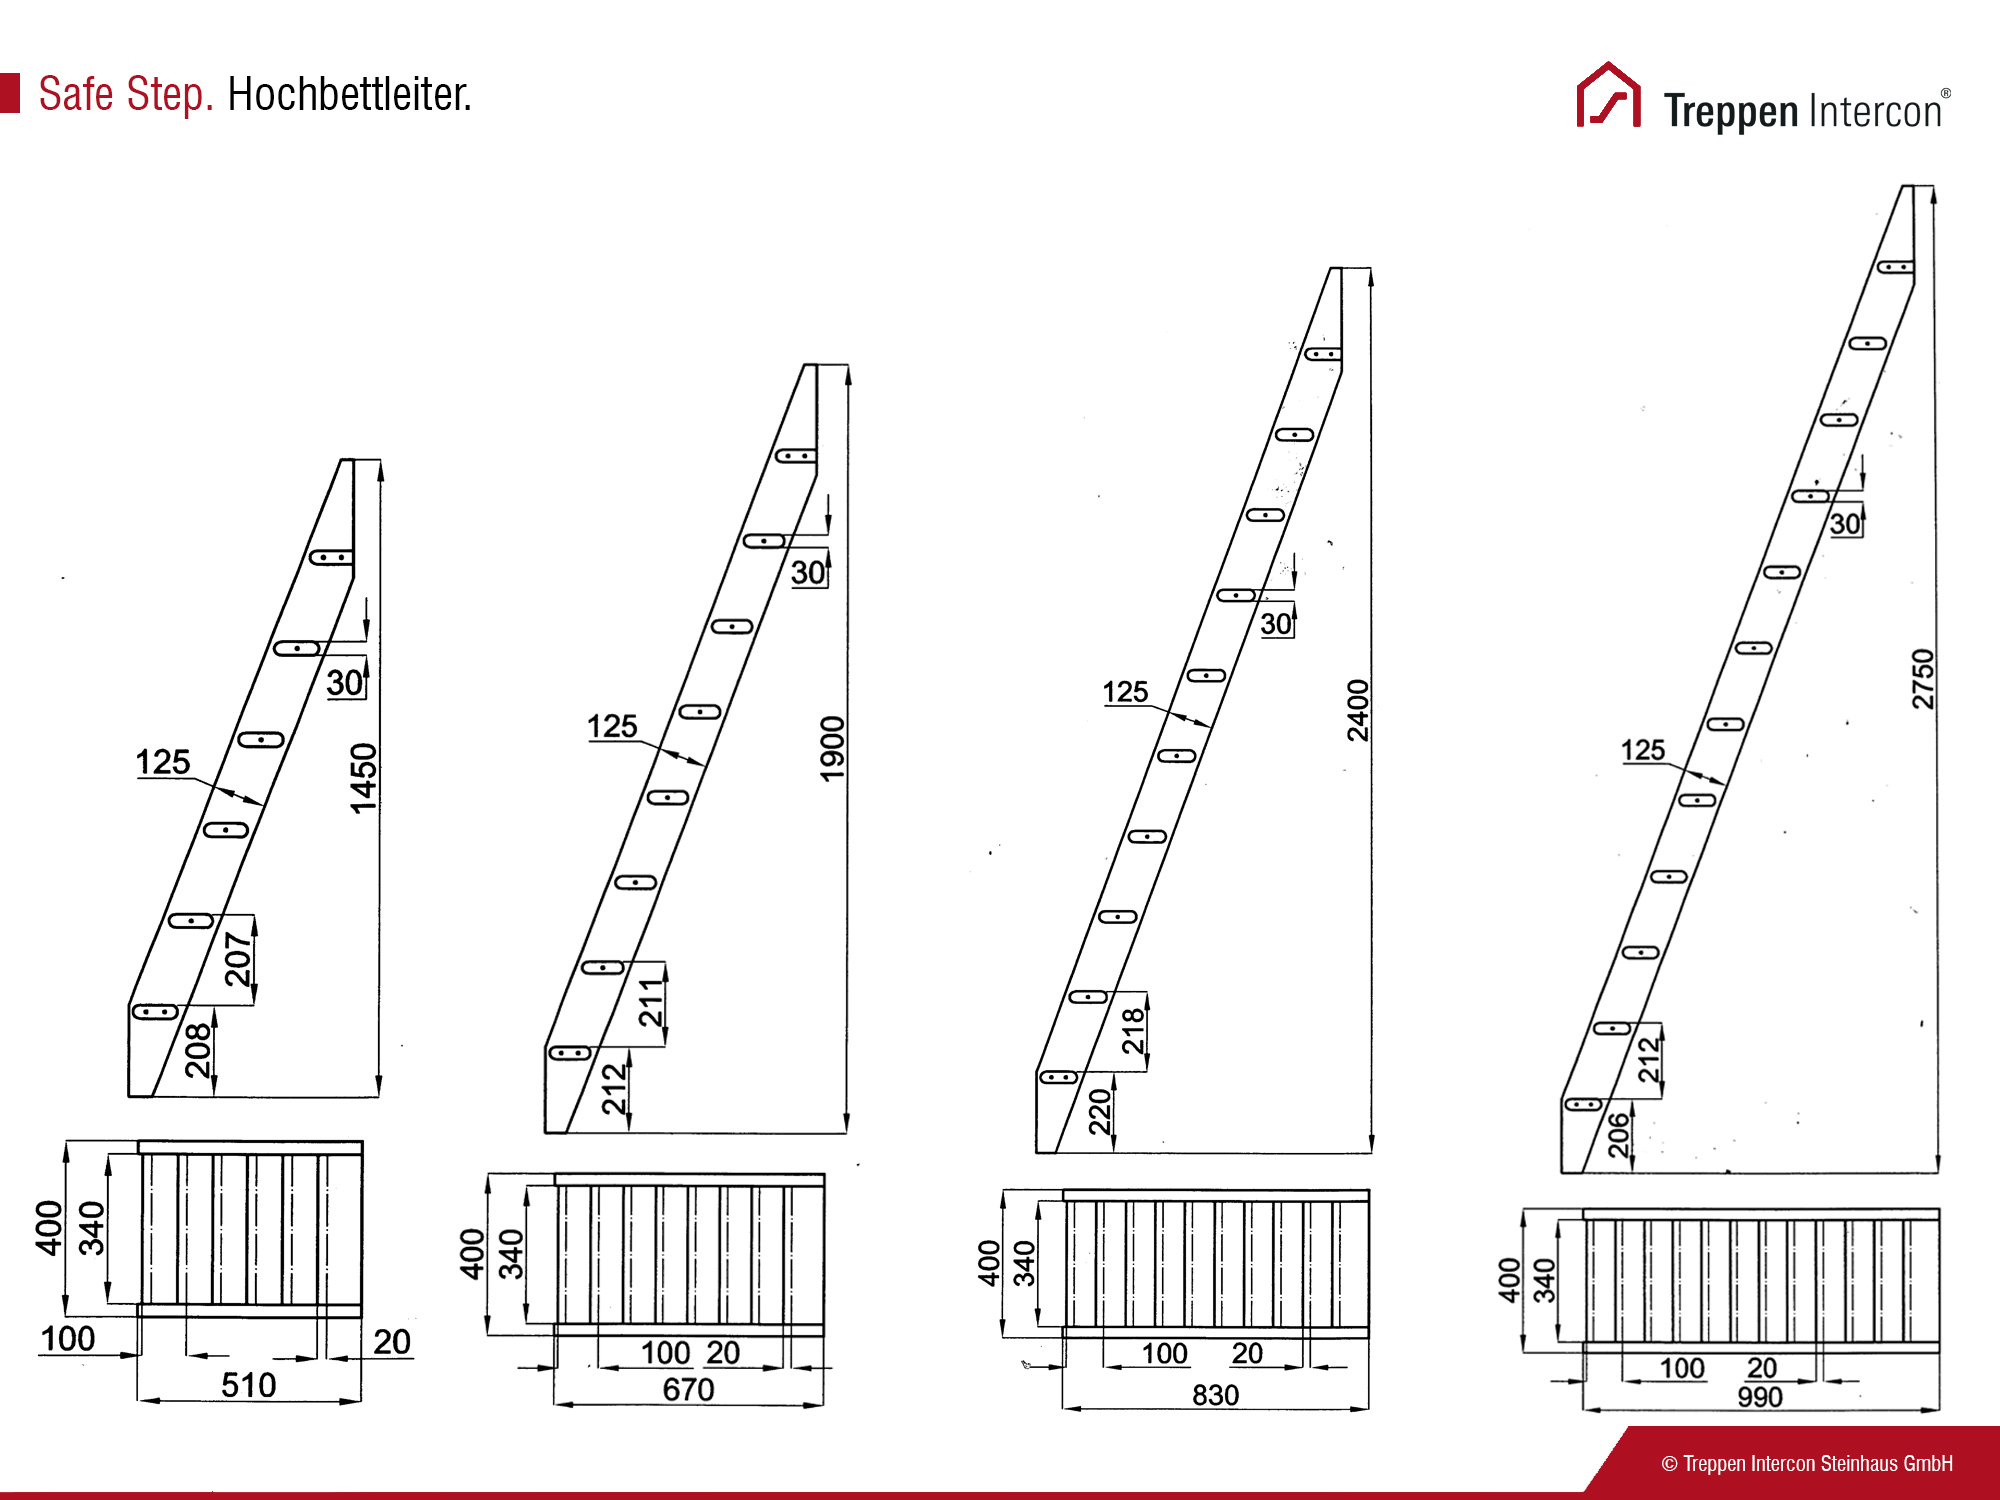 8 Stufen 190 cm 12 Stufen 260 cm 10 Stufen 240 cm 6 Stufen 145 cm Intercon® Hochbettleiter SAFE STEP Fichte Massivholz